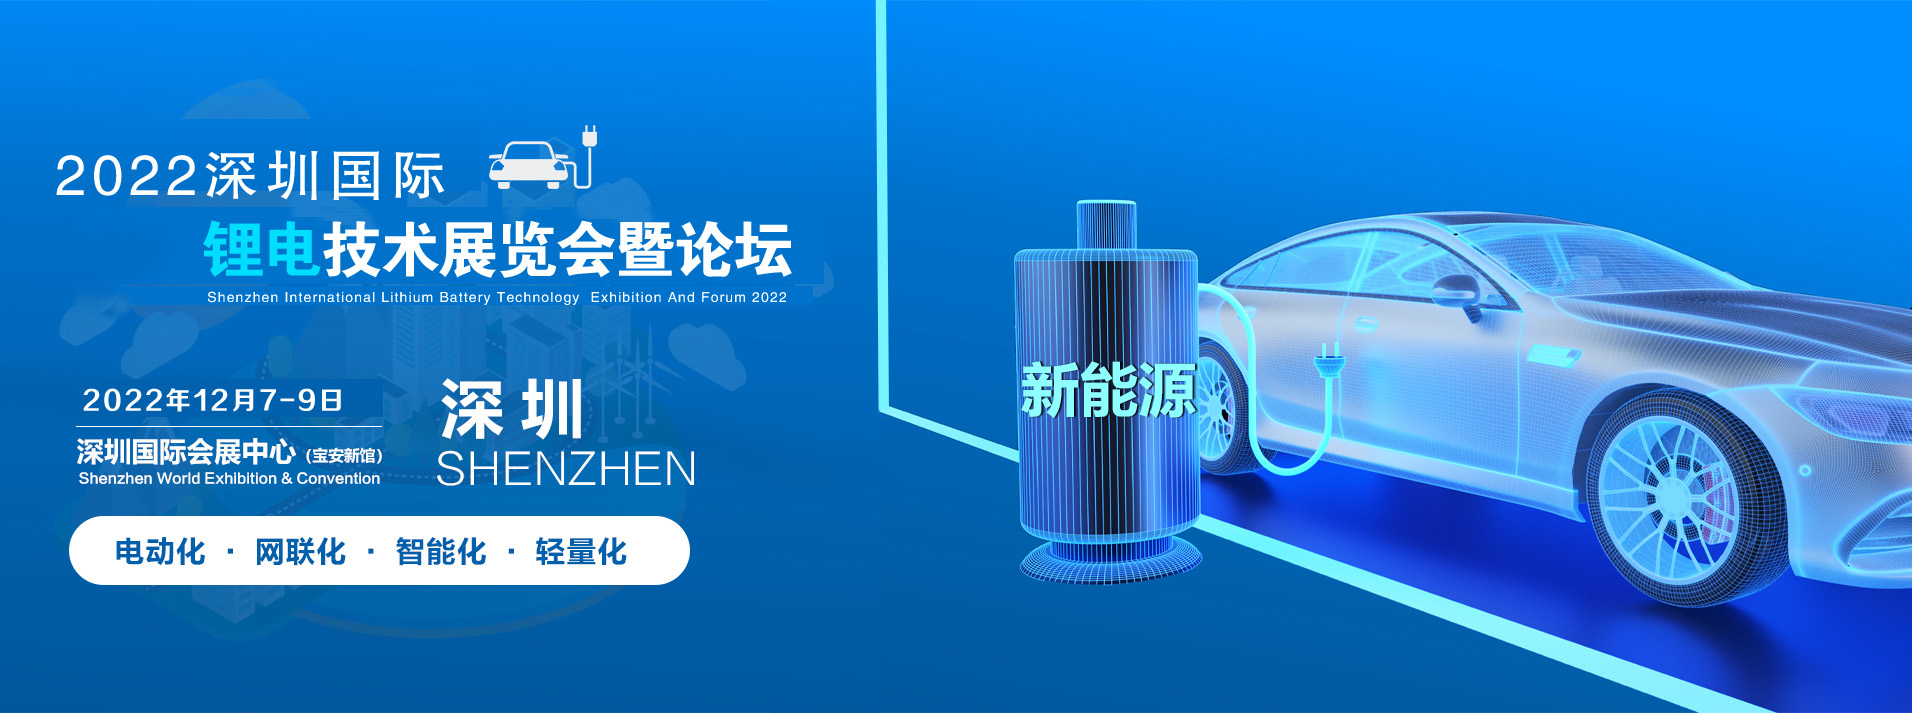 2022中国深圳锂电池移动机器人AGV/AMR展览会.暨锂电池行业交流论坛